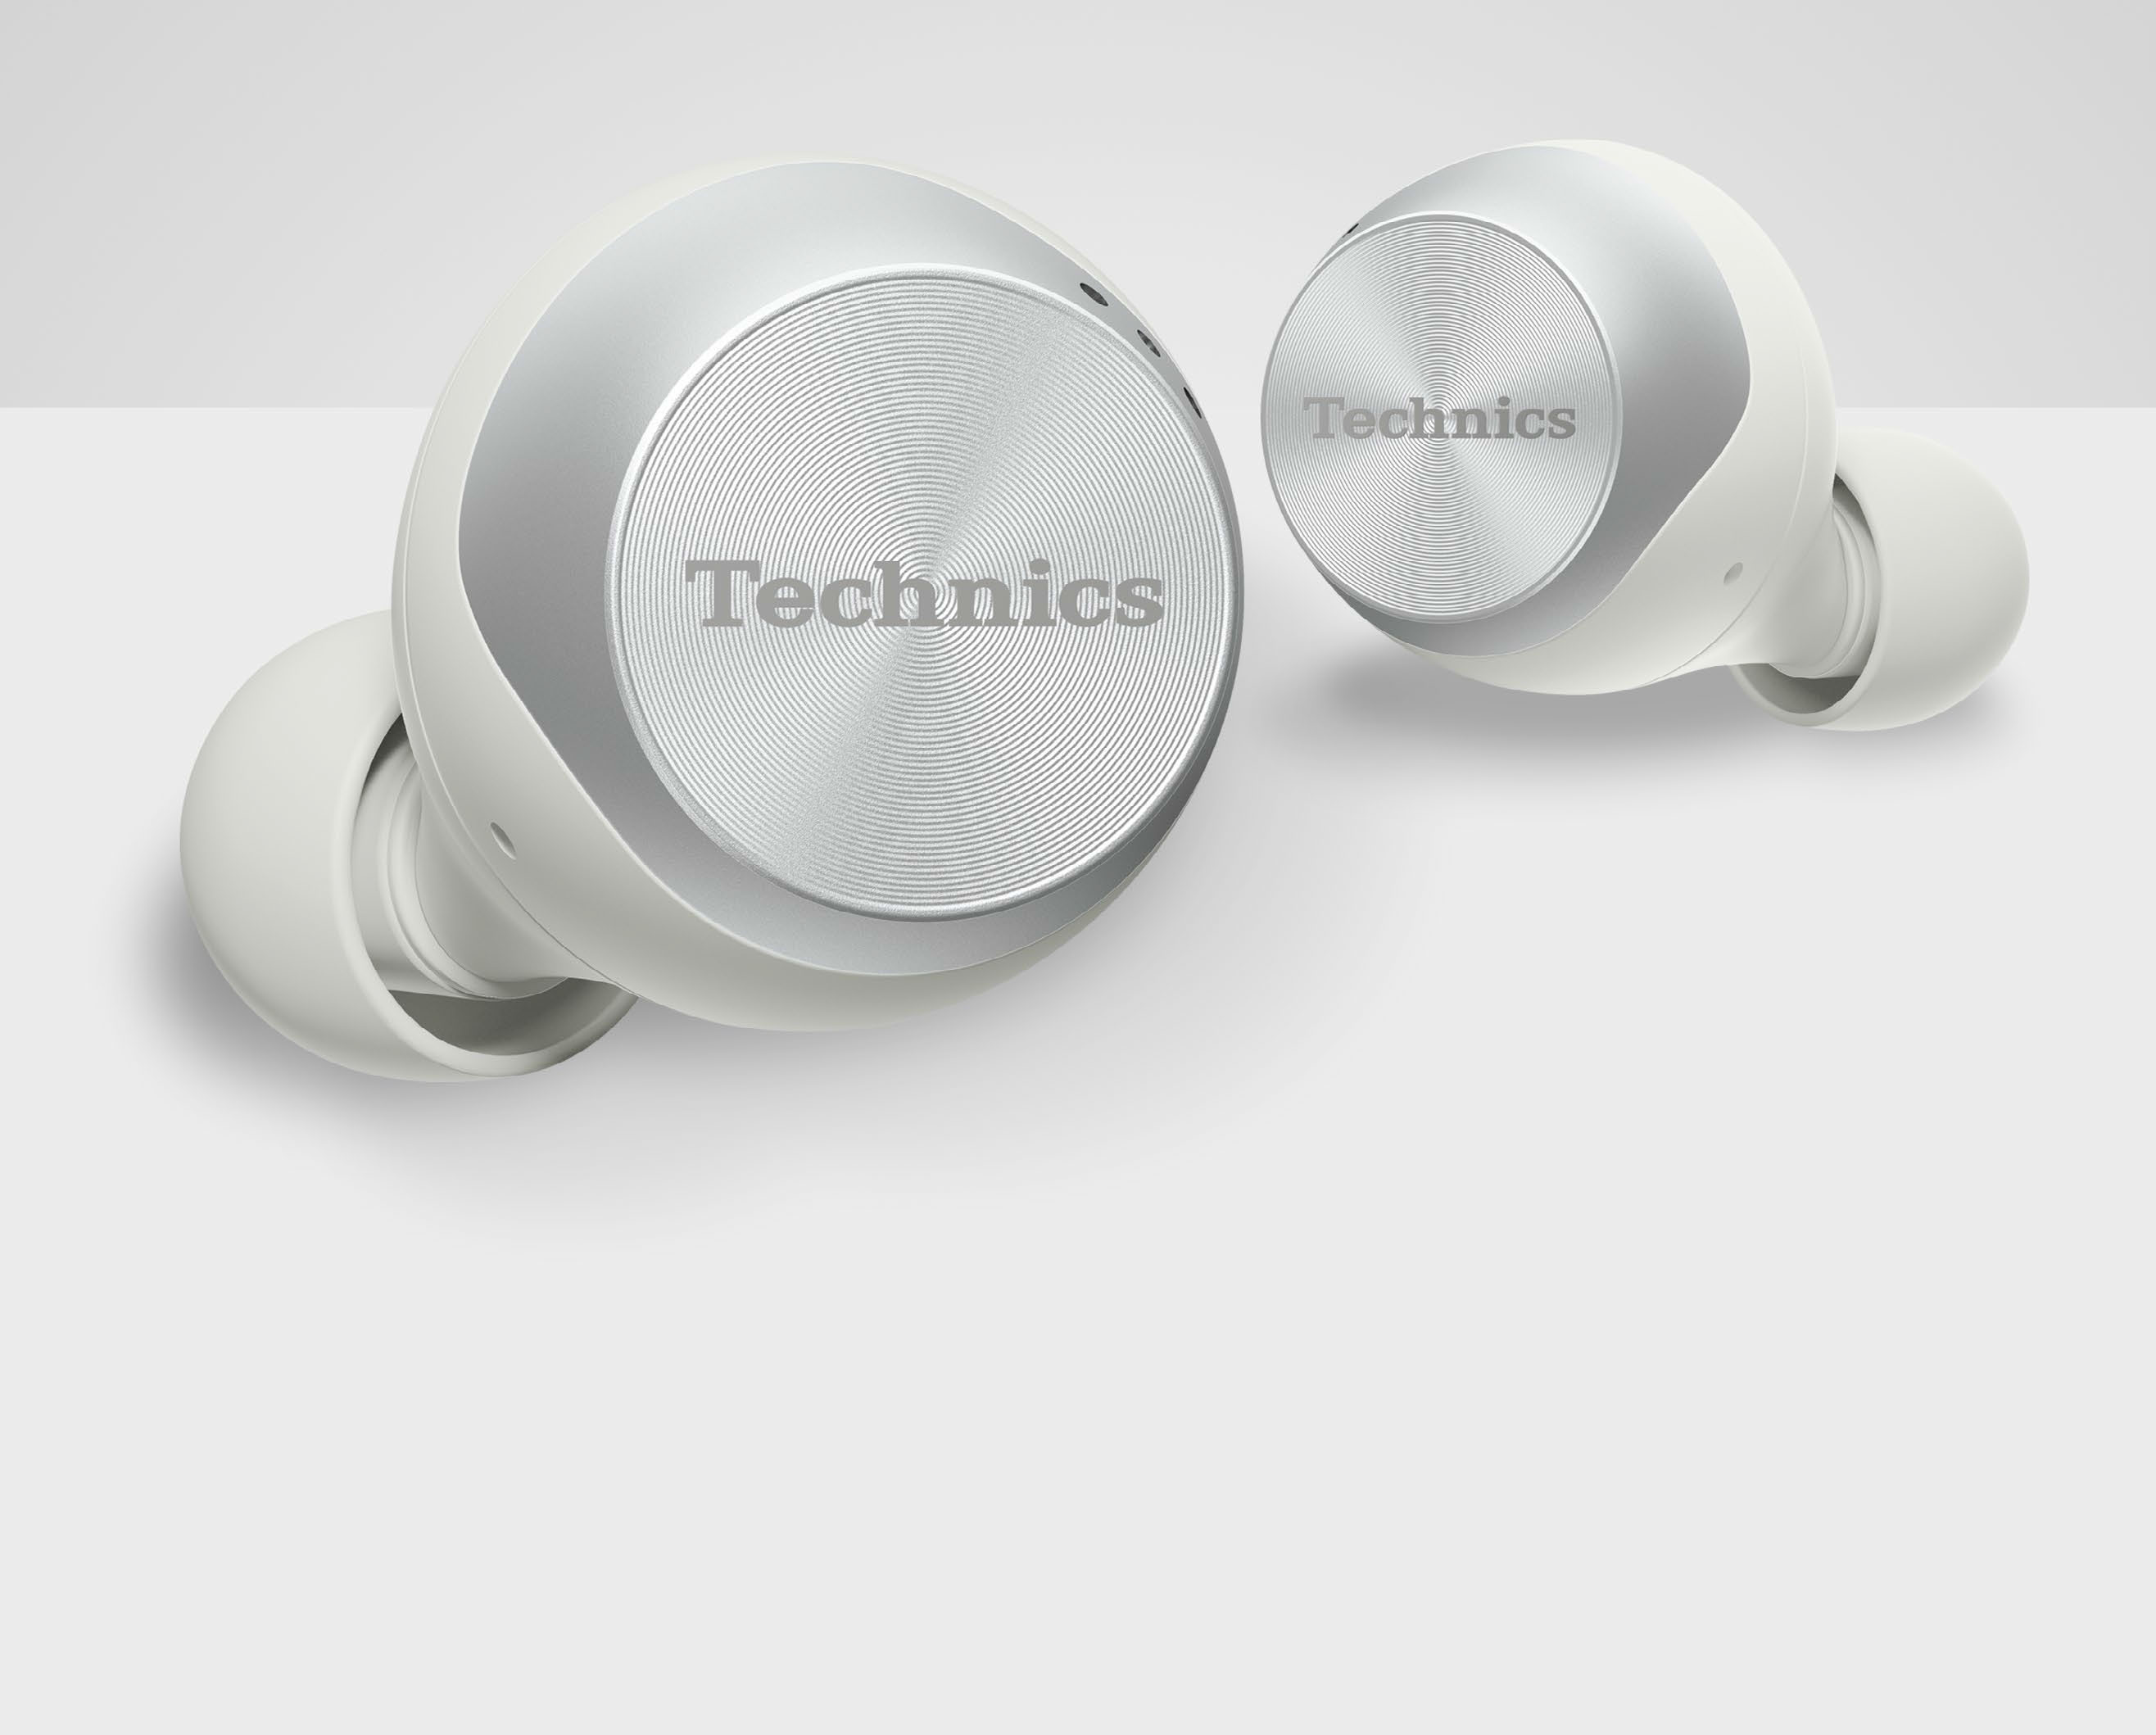 Technics EAH-AZ70W | Pocketmags.com